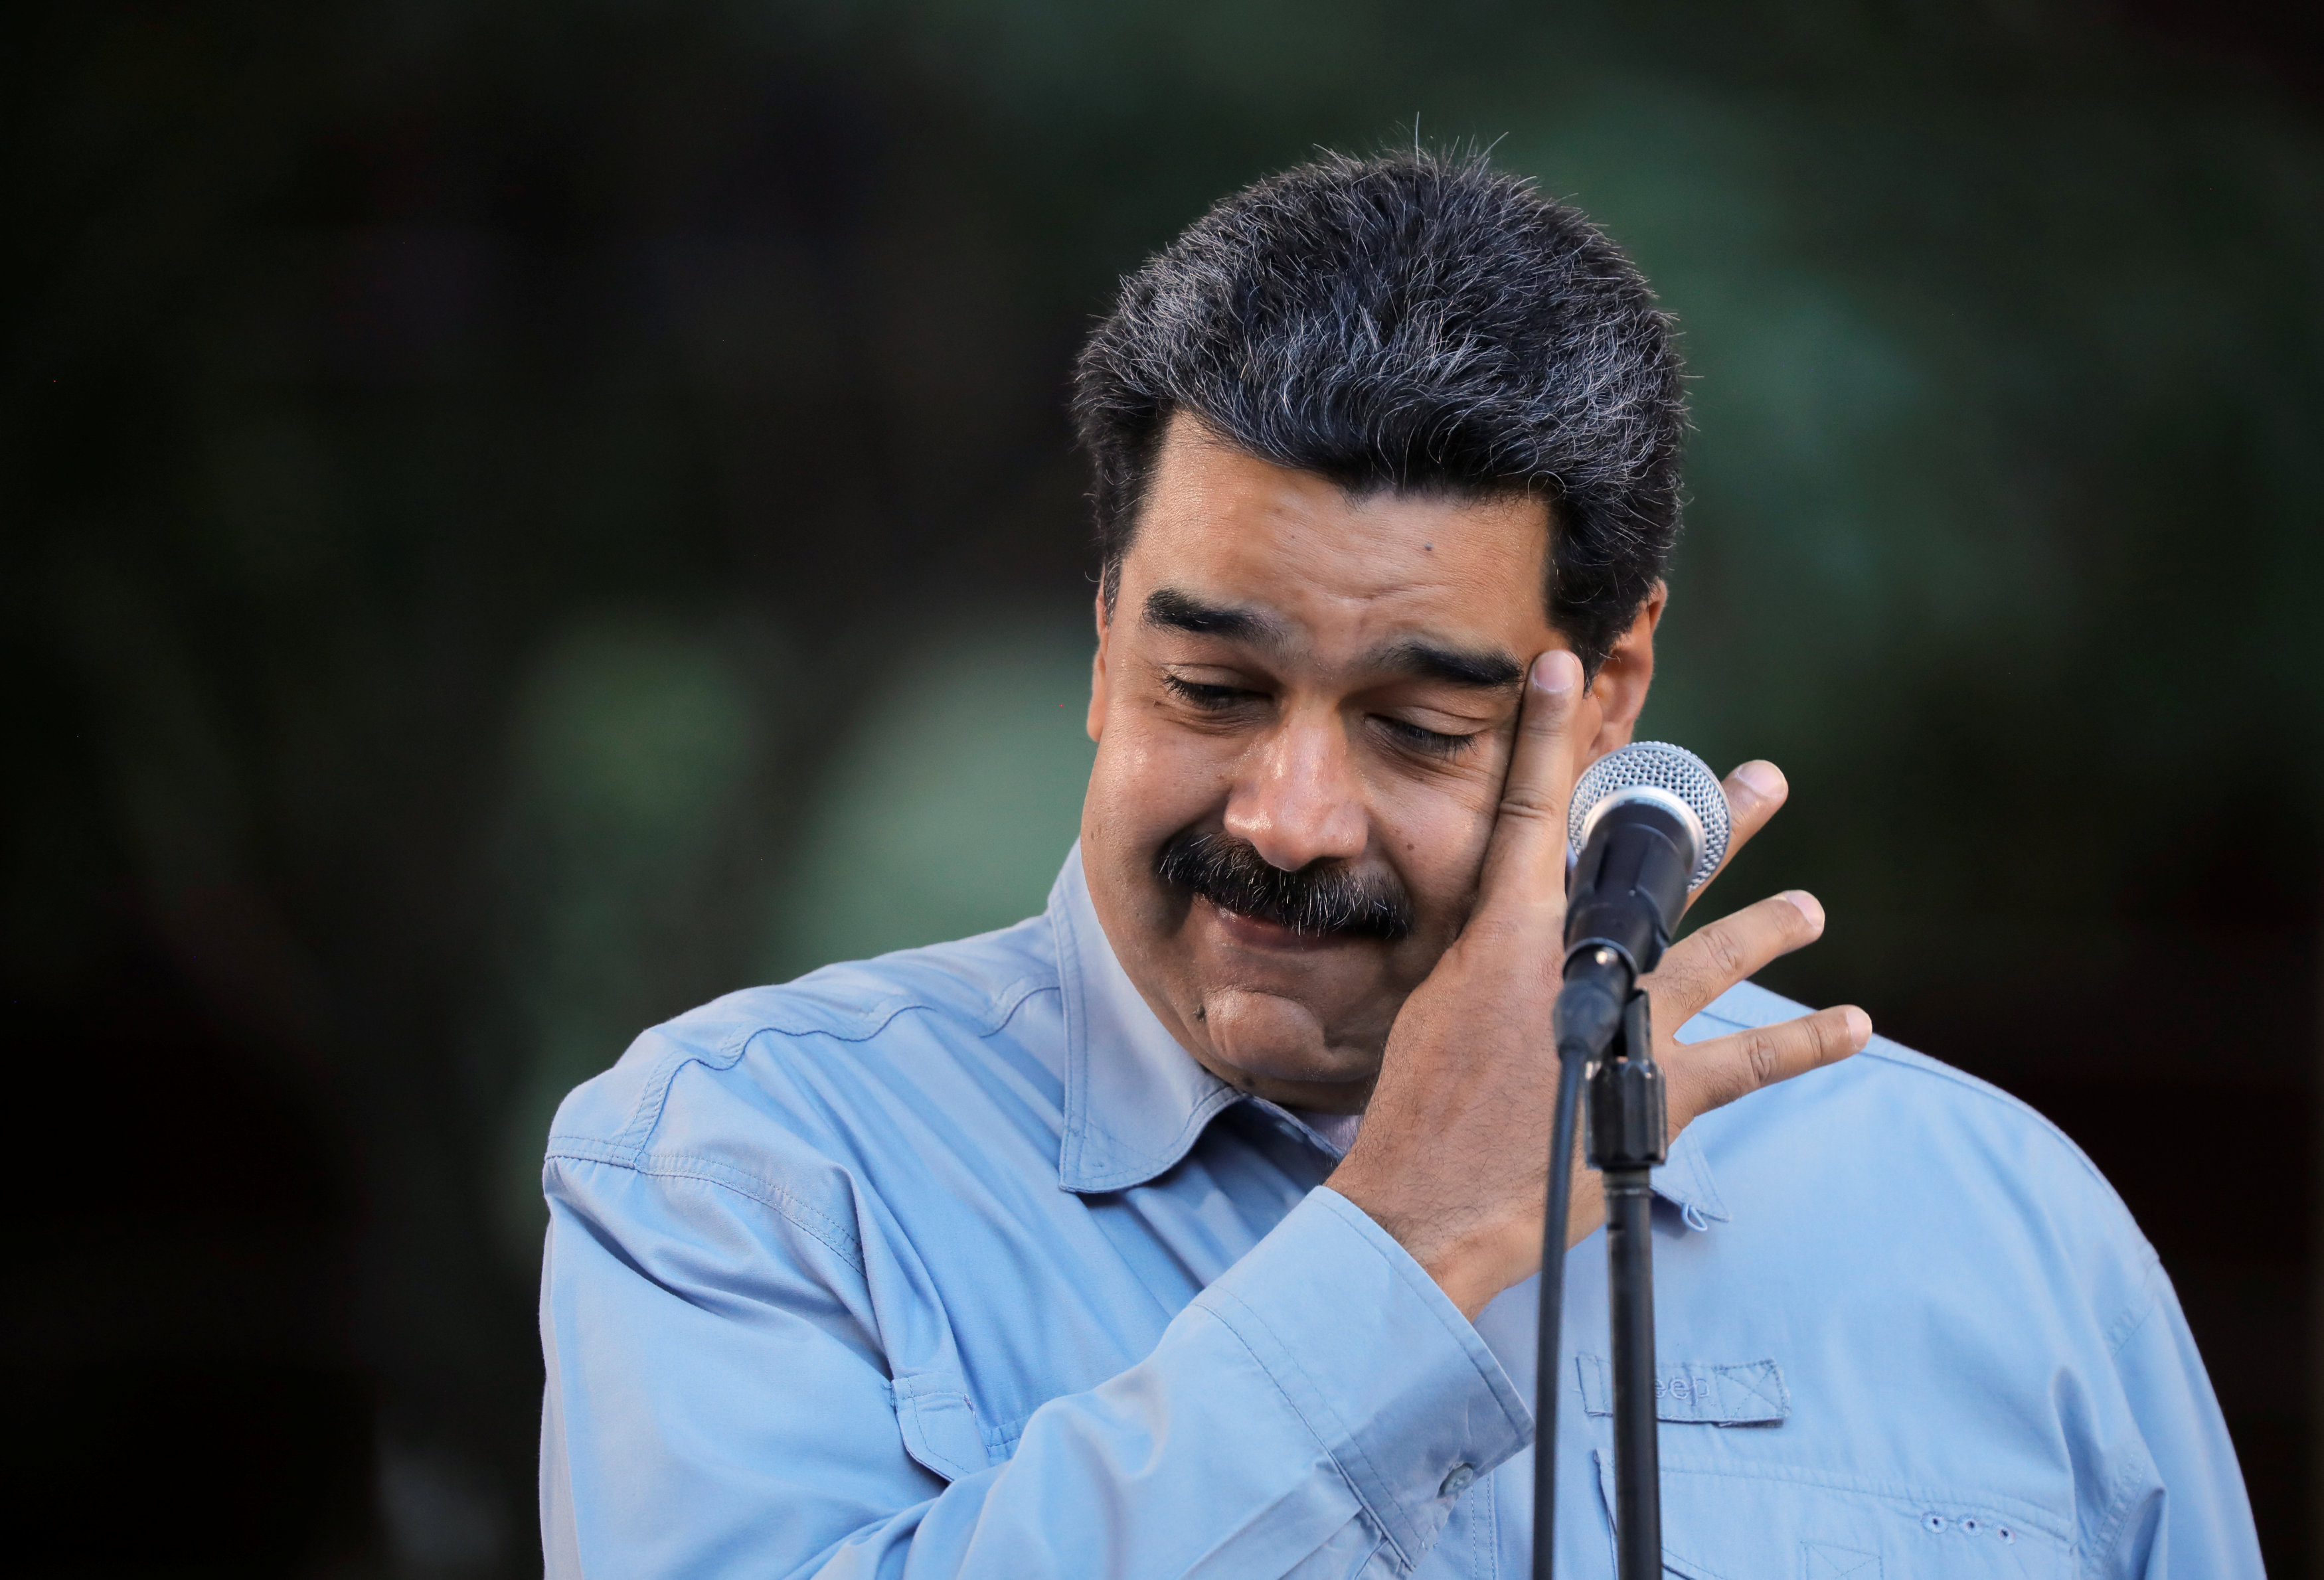 El DATO que se le chispoteó a Maduro y reveló que miente sobre el coronavirus